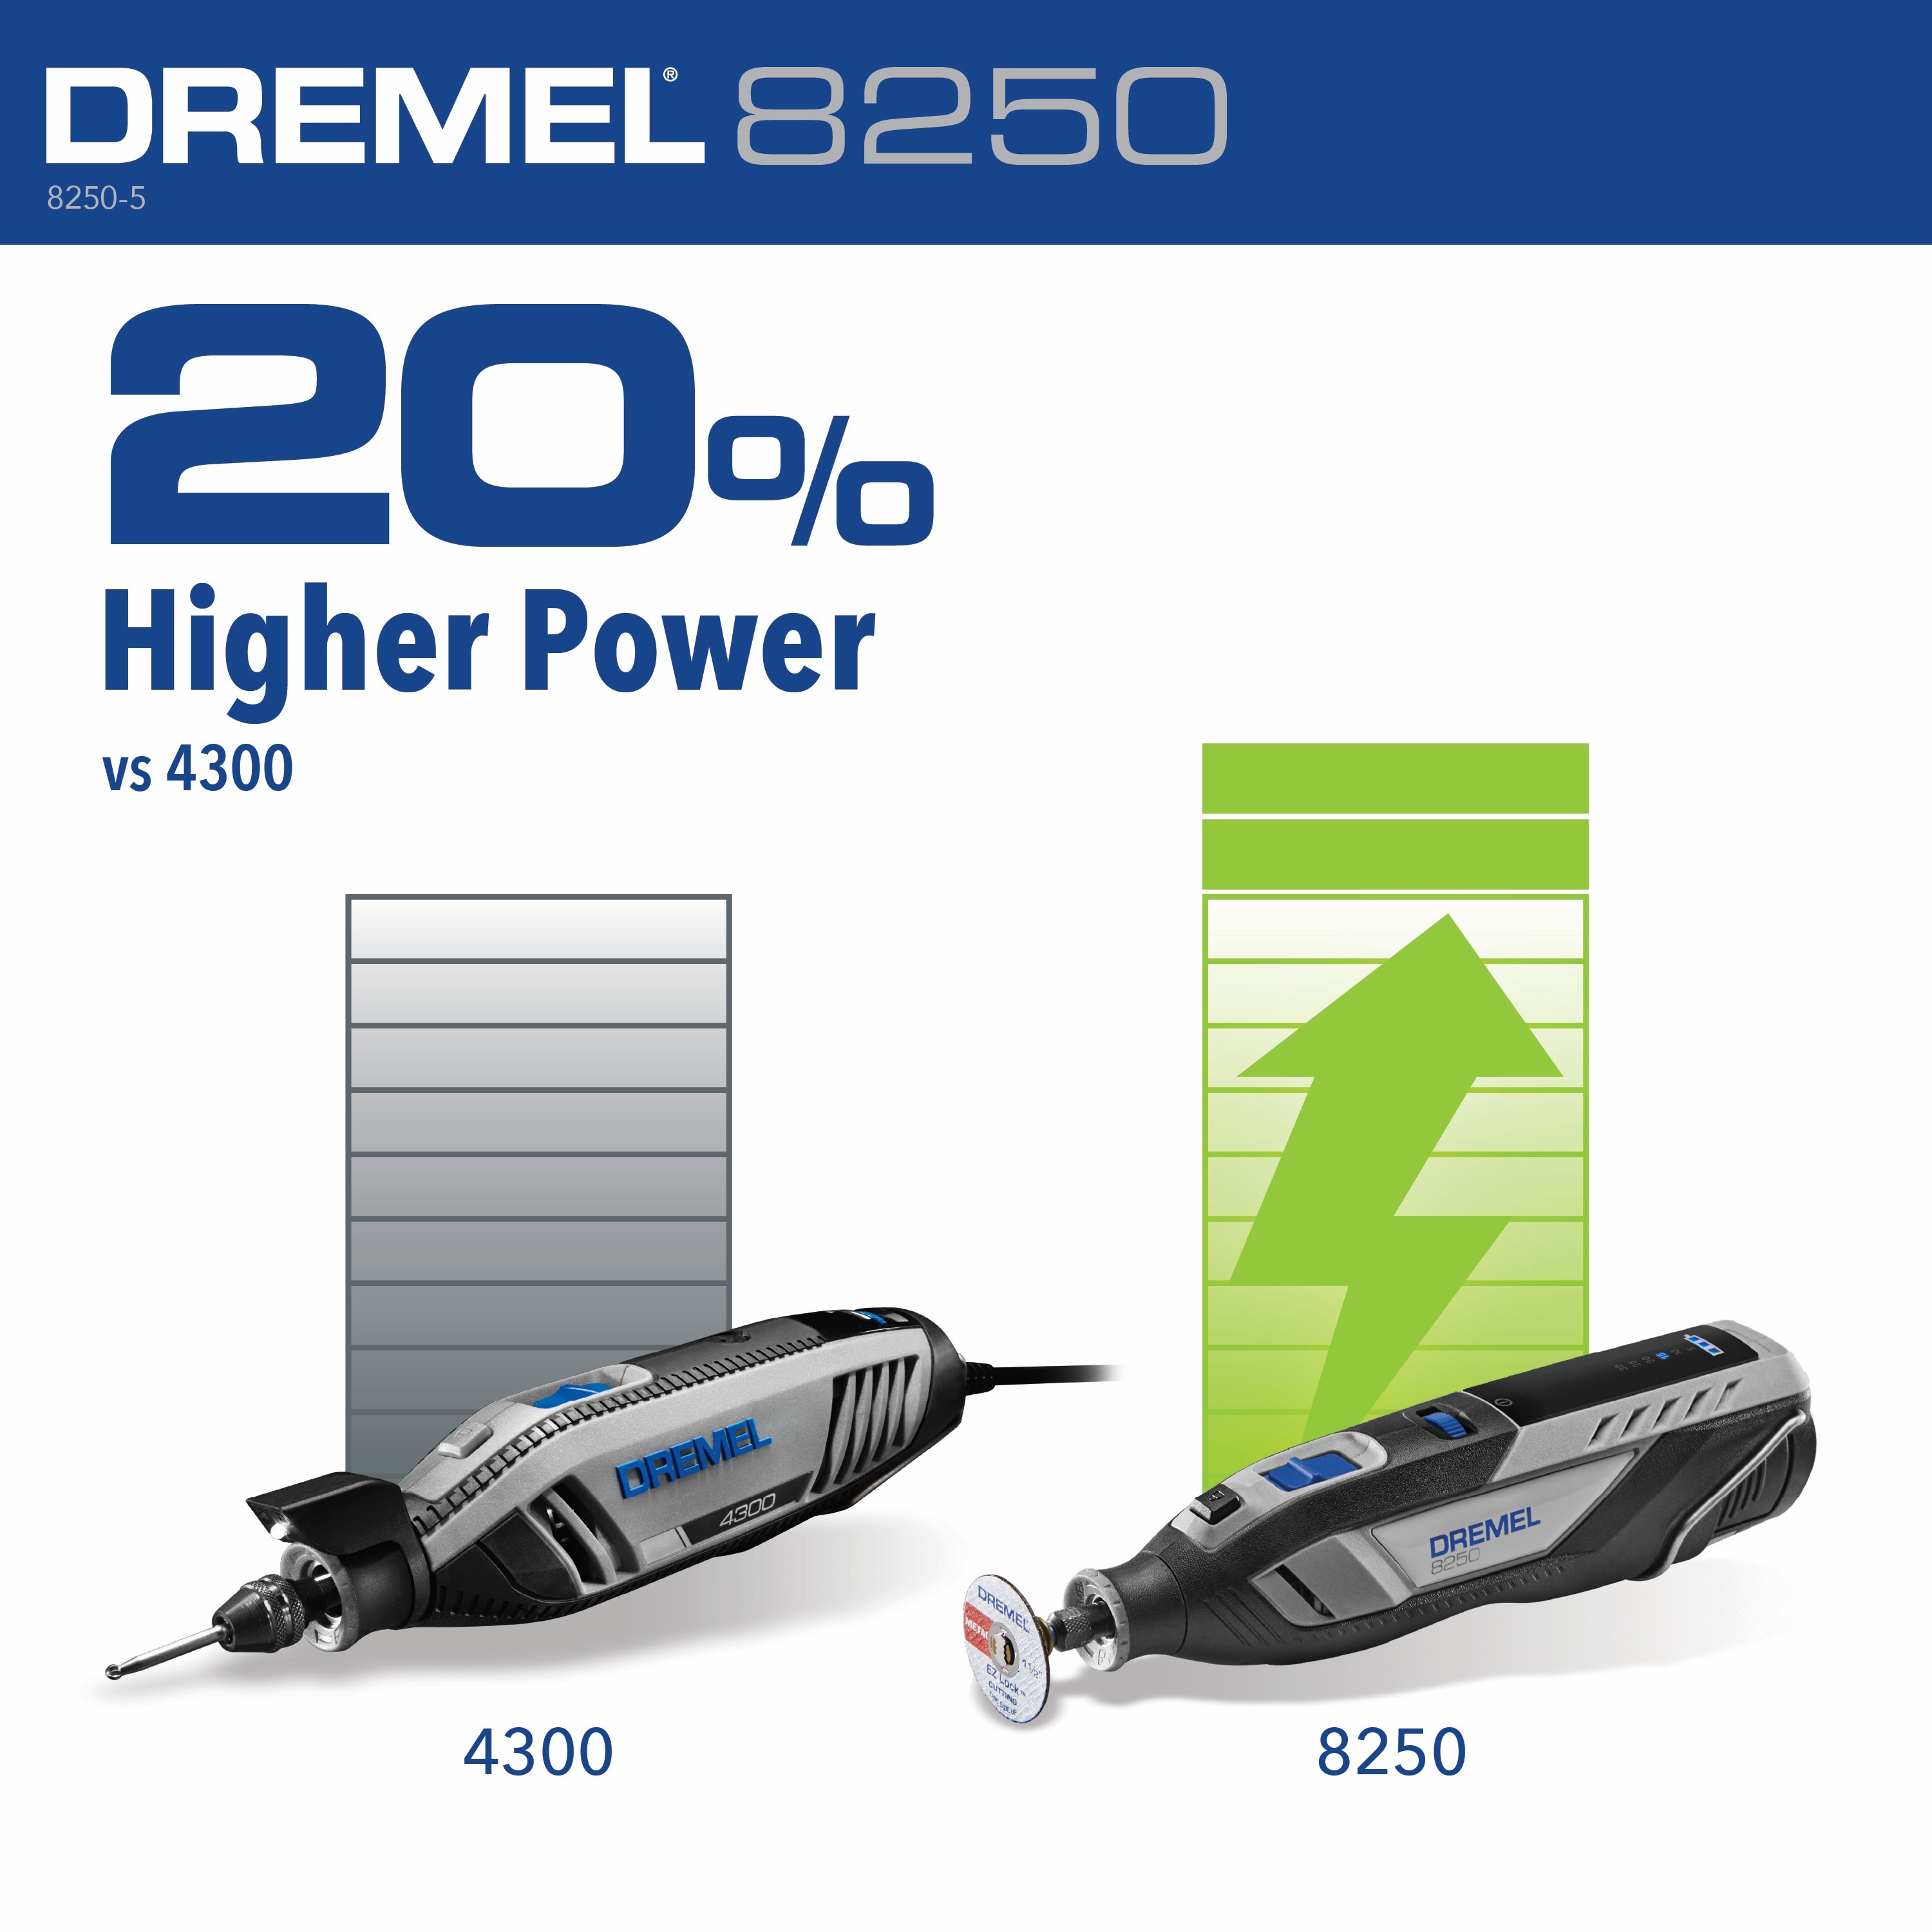 Dremel 8250 Brushless Variable Speed Cordless 12-volt 3-Amp